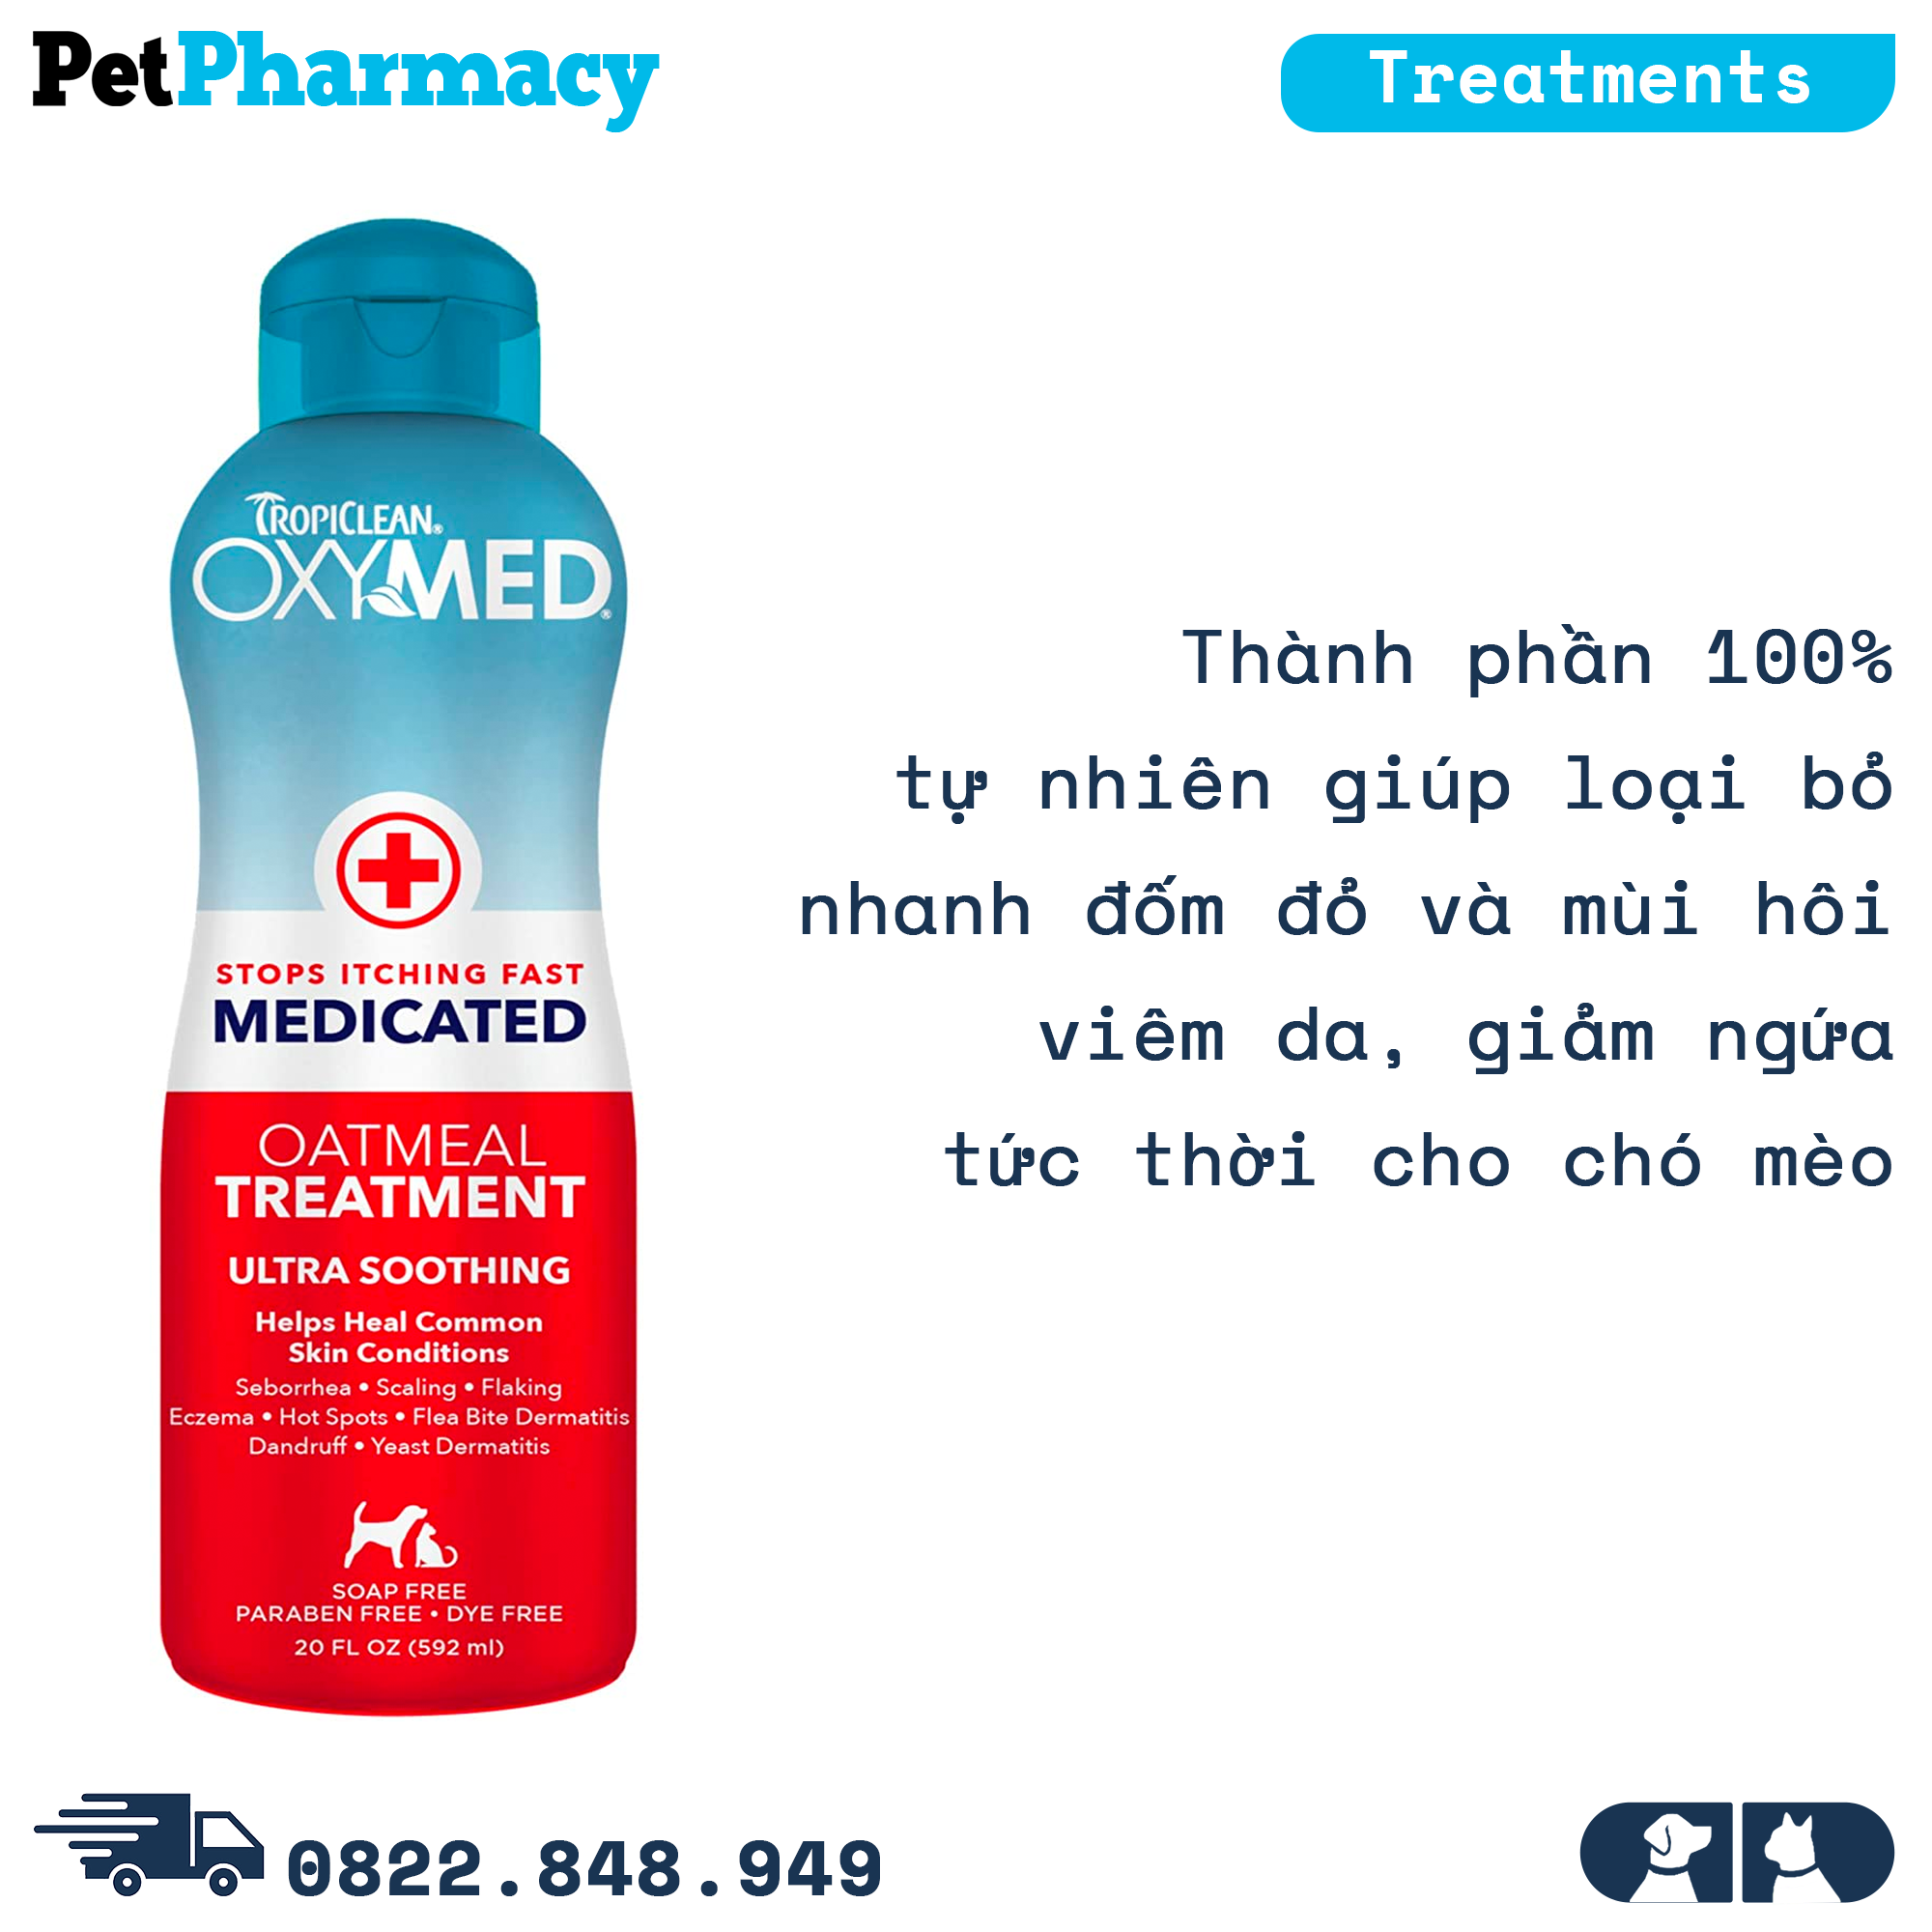  Kem bôi TropiClean OXYMED Stops Itching Fast Medicated 592ml - Loại bỏ nhanh đốm đỏ và mùi hôi viêm da, giảm ngứa tức thời cho chó mèo PetPharmacy 